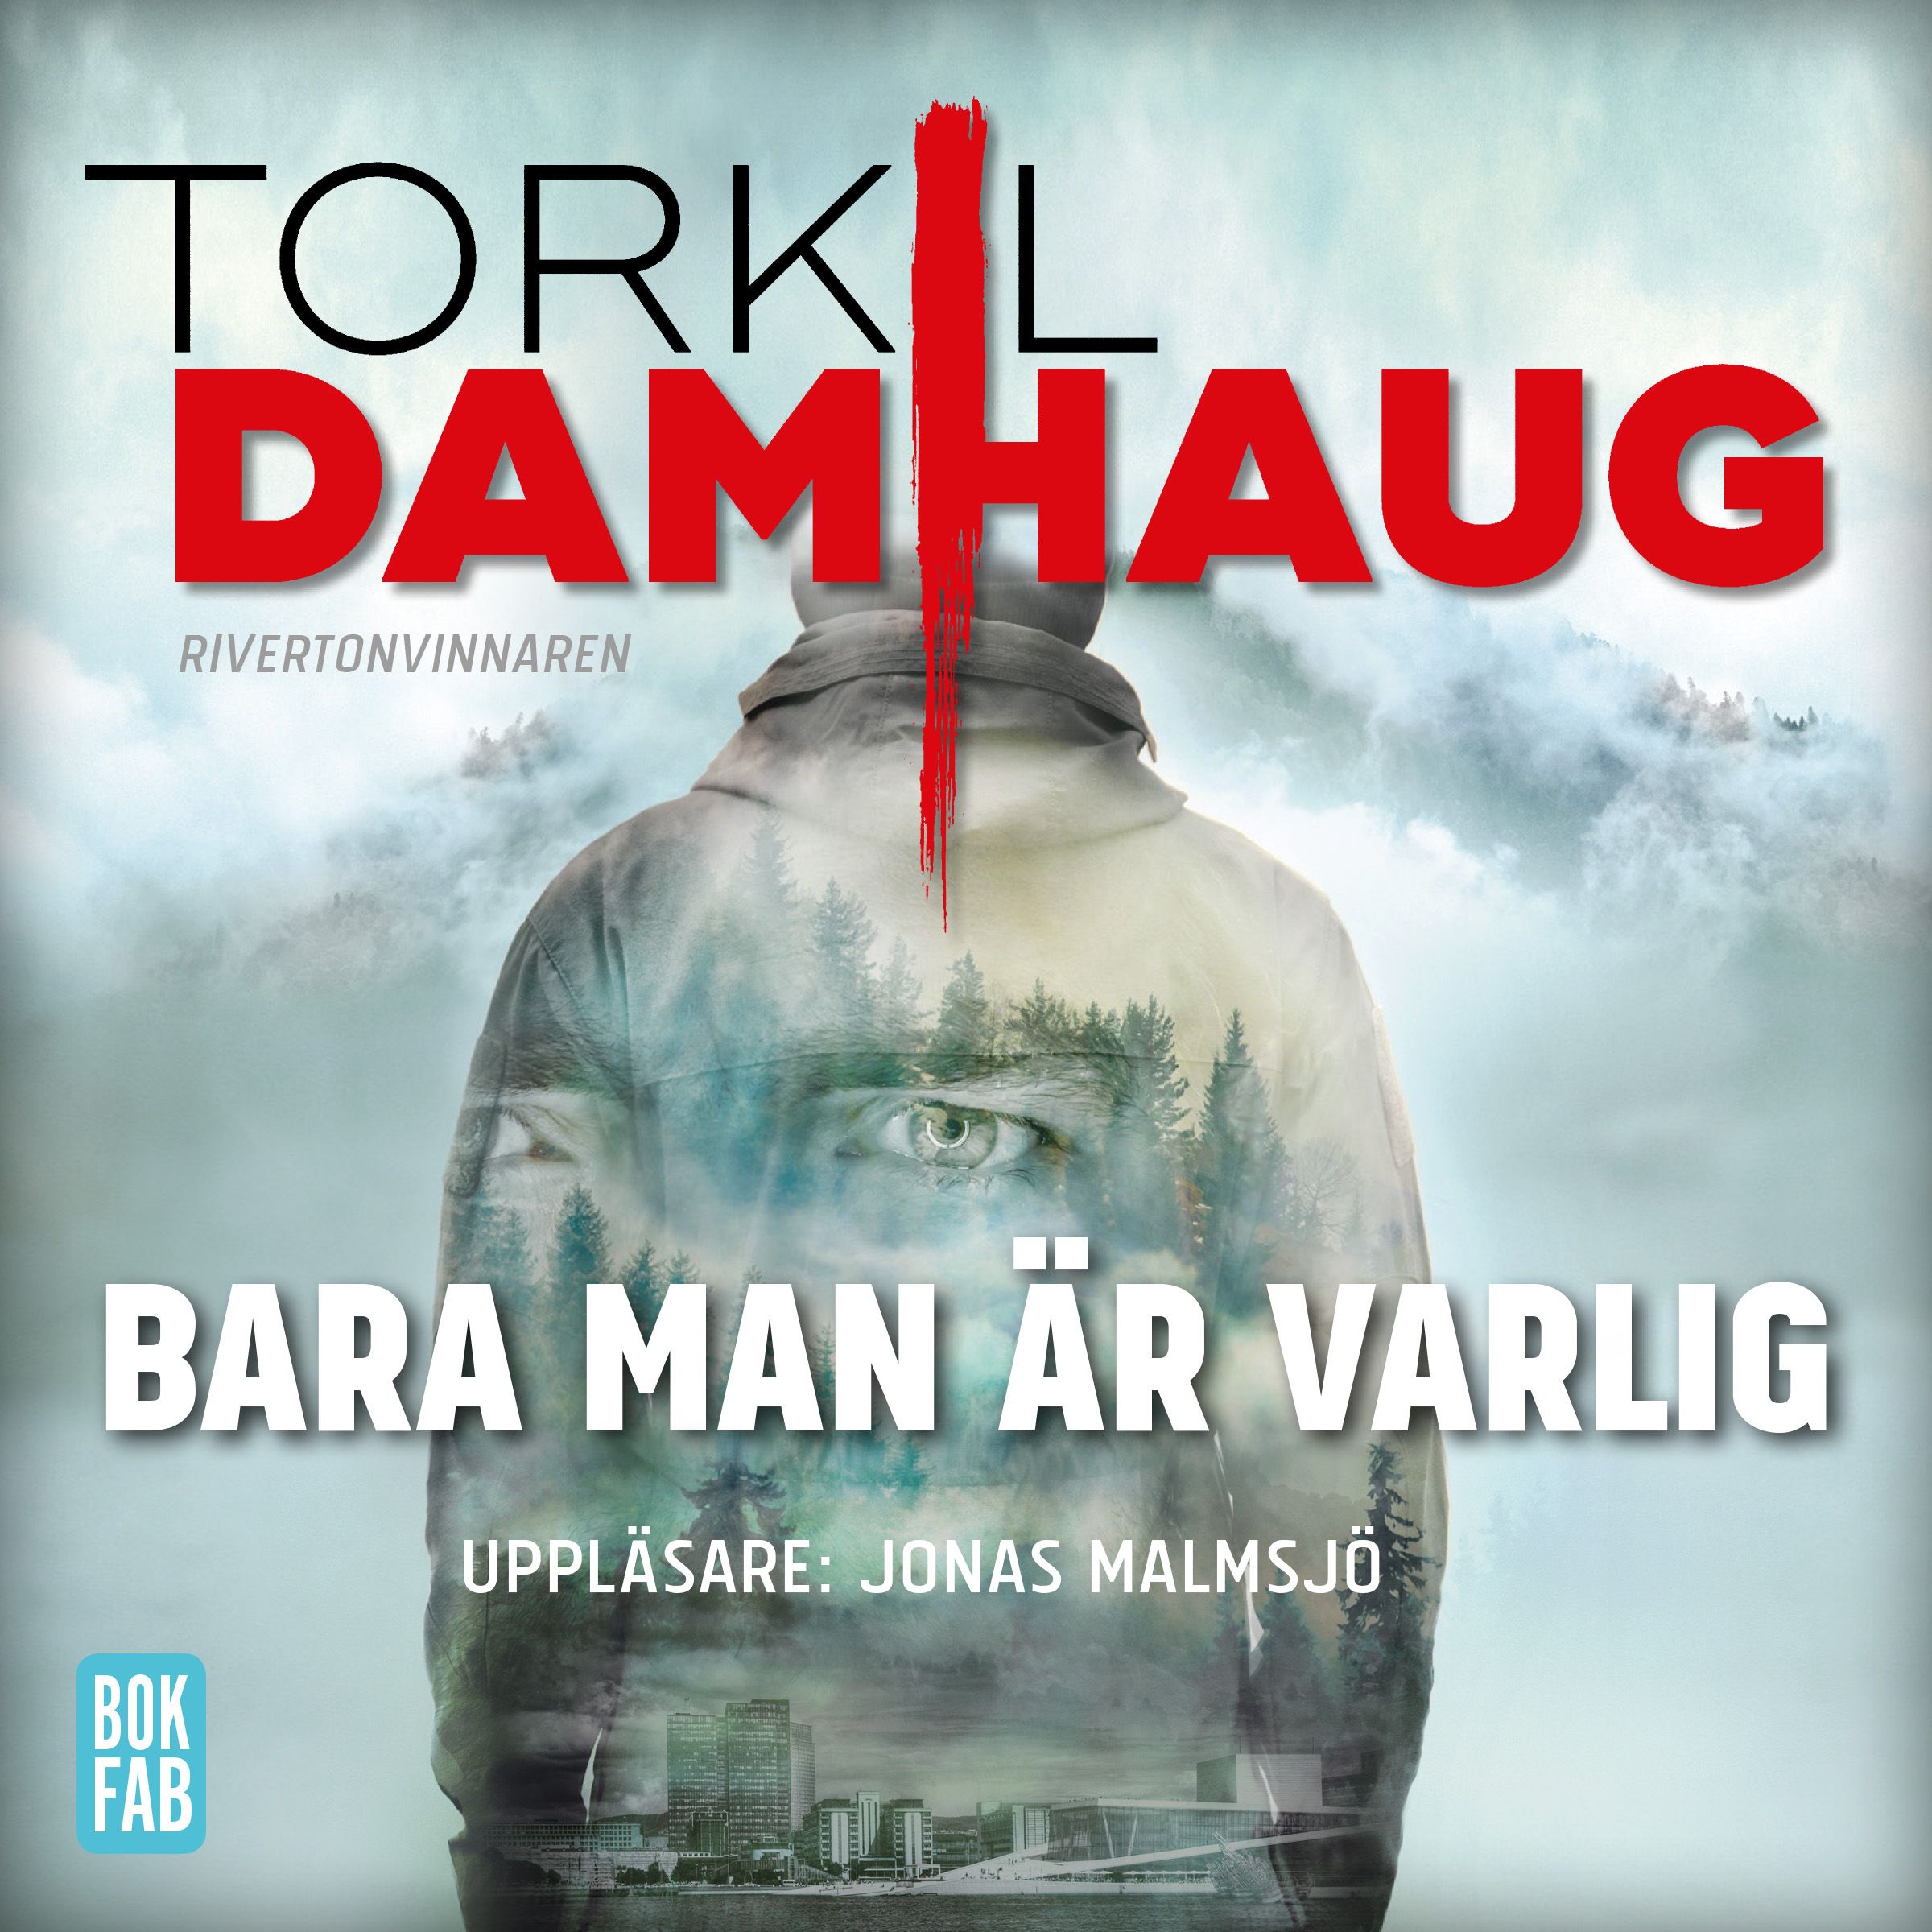 Bara man är varlig, audiobook by Torkil Damhaug